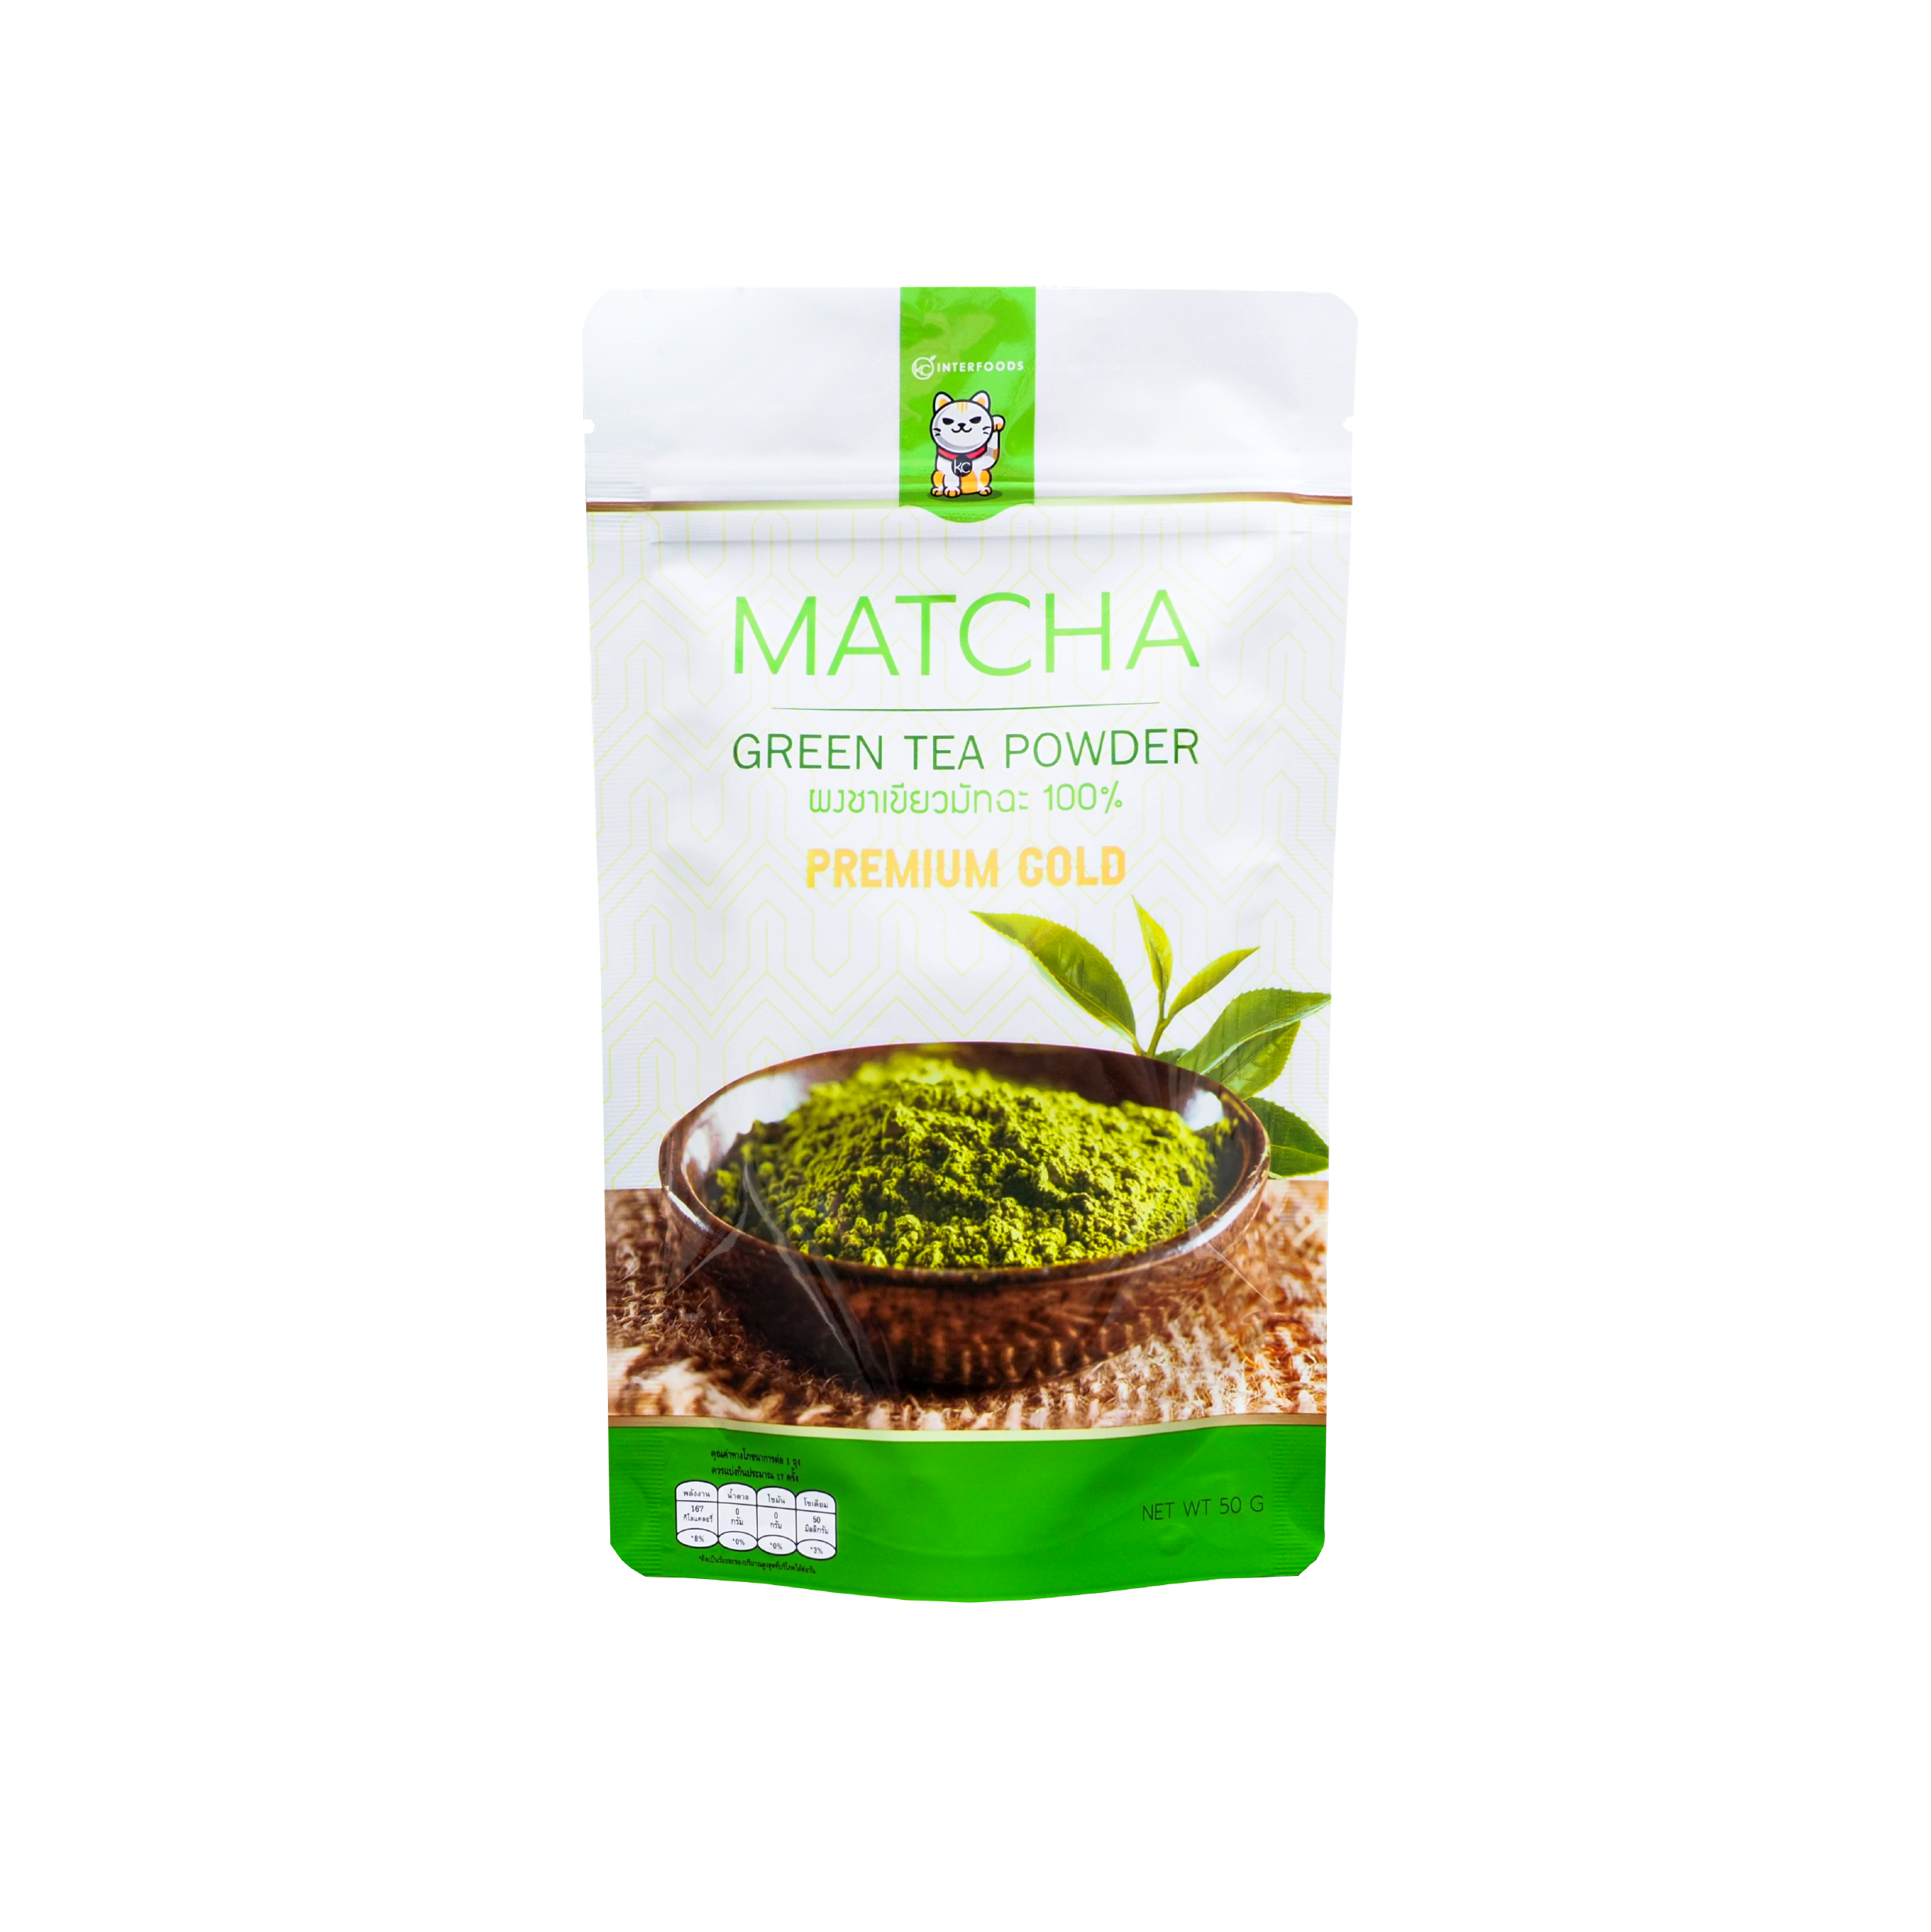 ผงชาเขียวมัทฉะ 100% สูตรพรีเมี่ยมโกลด์ 50 กรัม (Premium Gold Matcha Green Tea 100%)